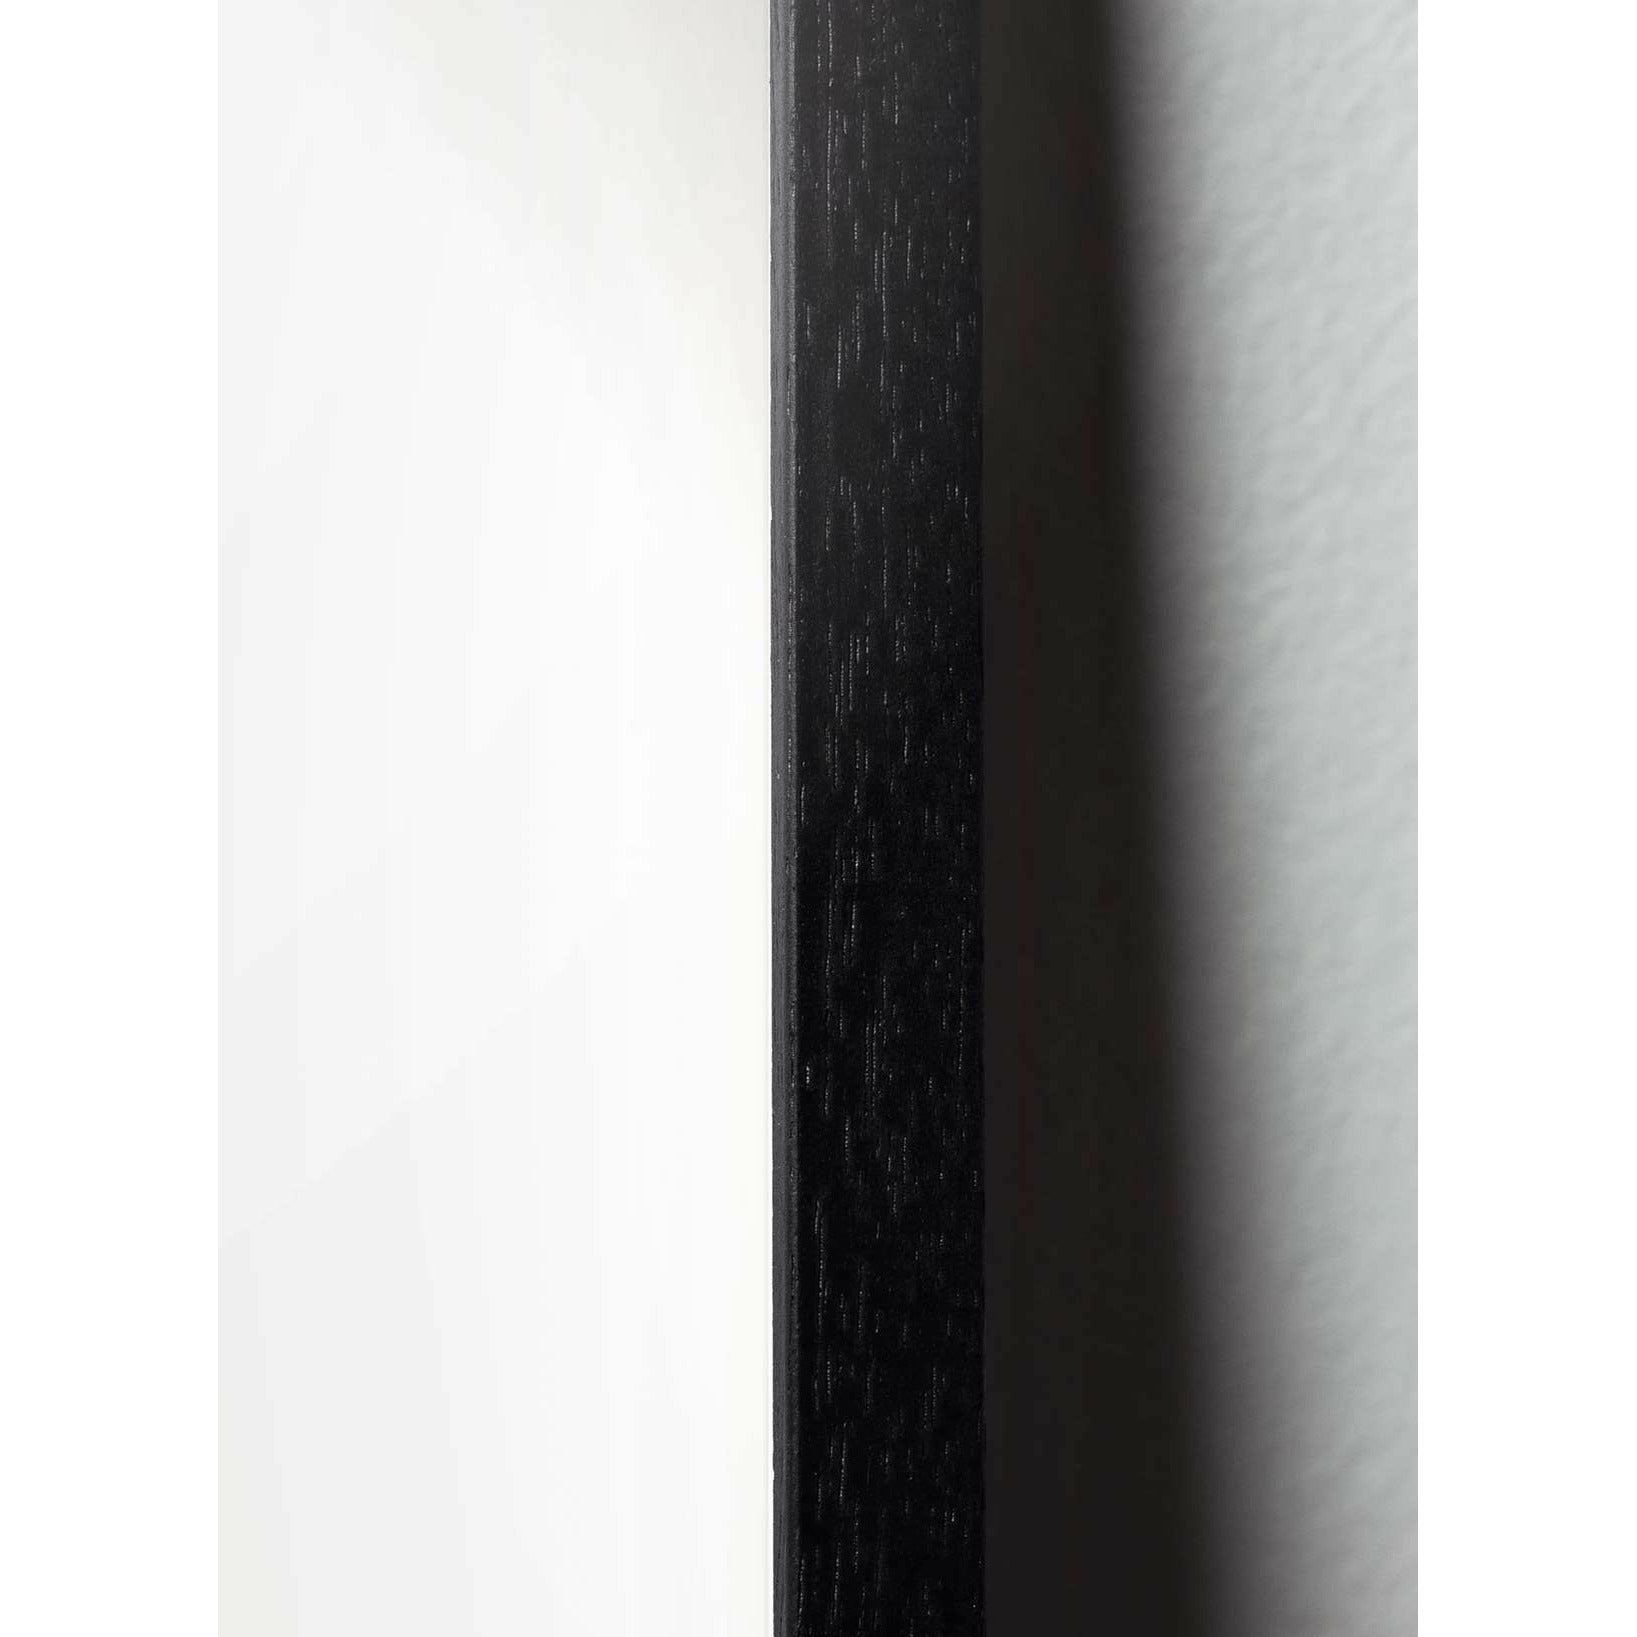 Póster de icono de diseño de hormigas de creación, marco hecho de madera lacada negra 50x70 cm, amarillo